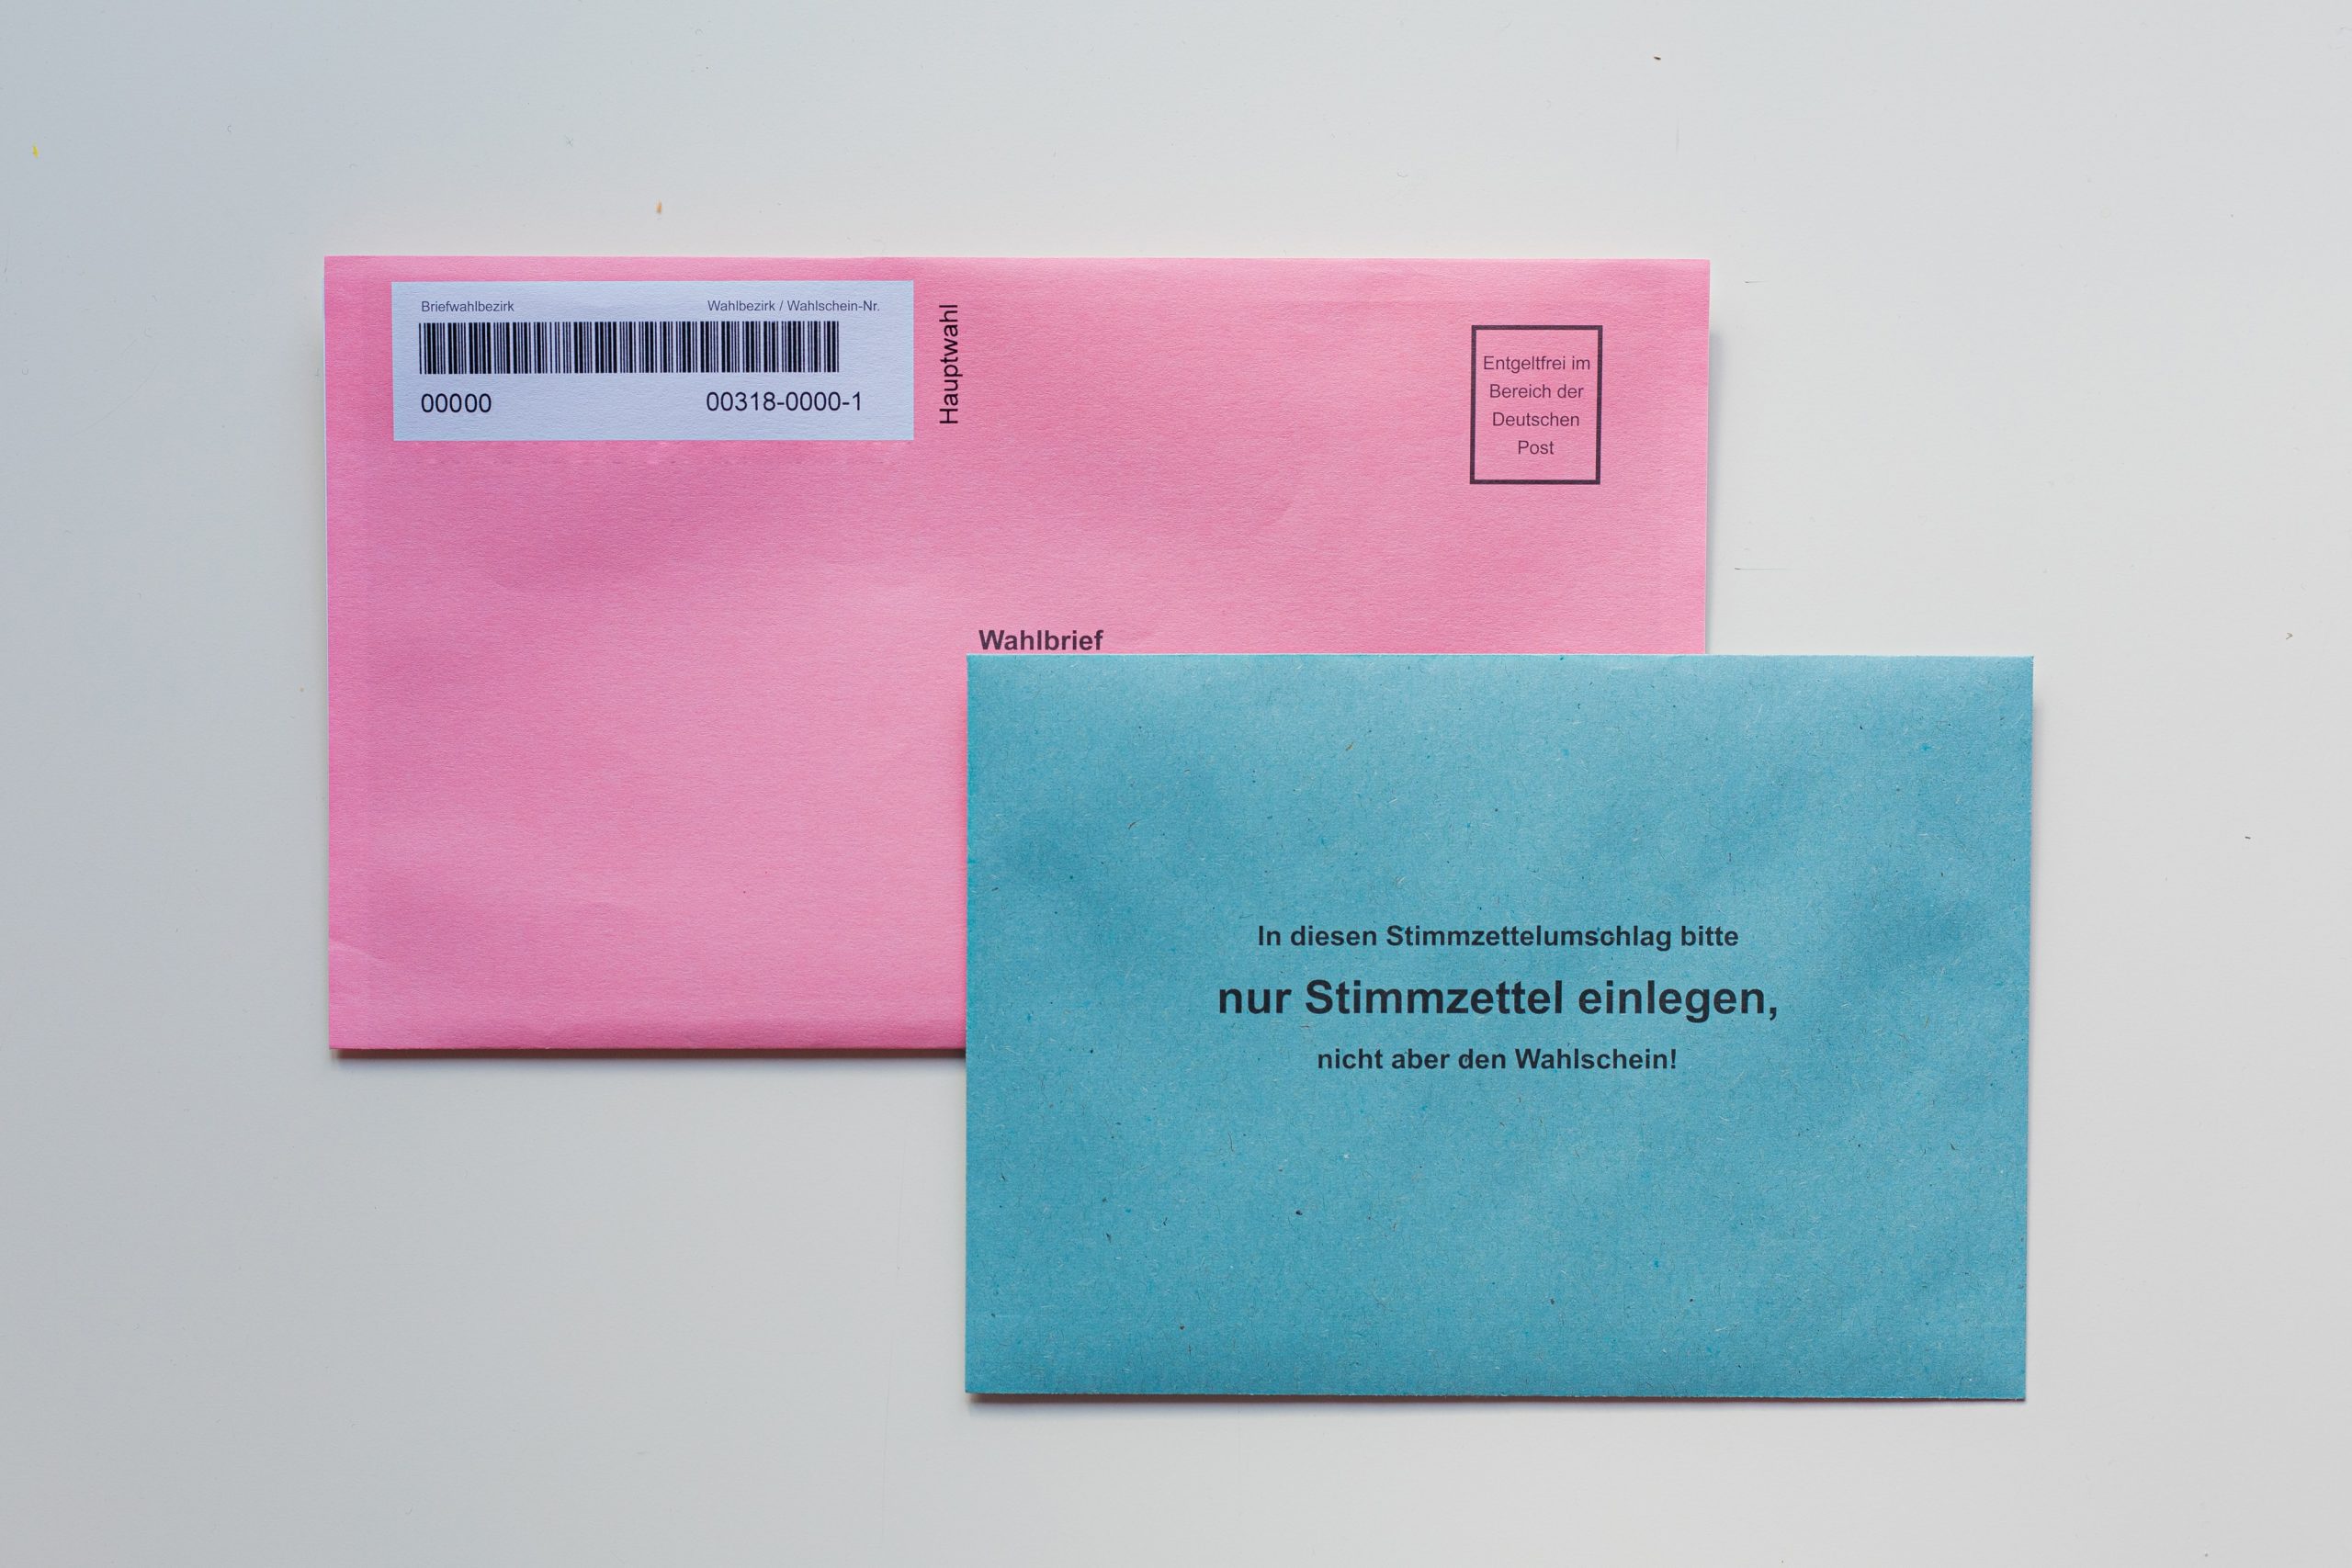 Bild: Bianca Ackermann, blue envelope on white table, CC0, via unsplash.com (keine Änderungen vorgenommen)